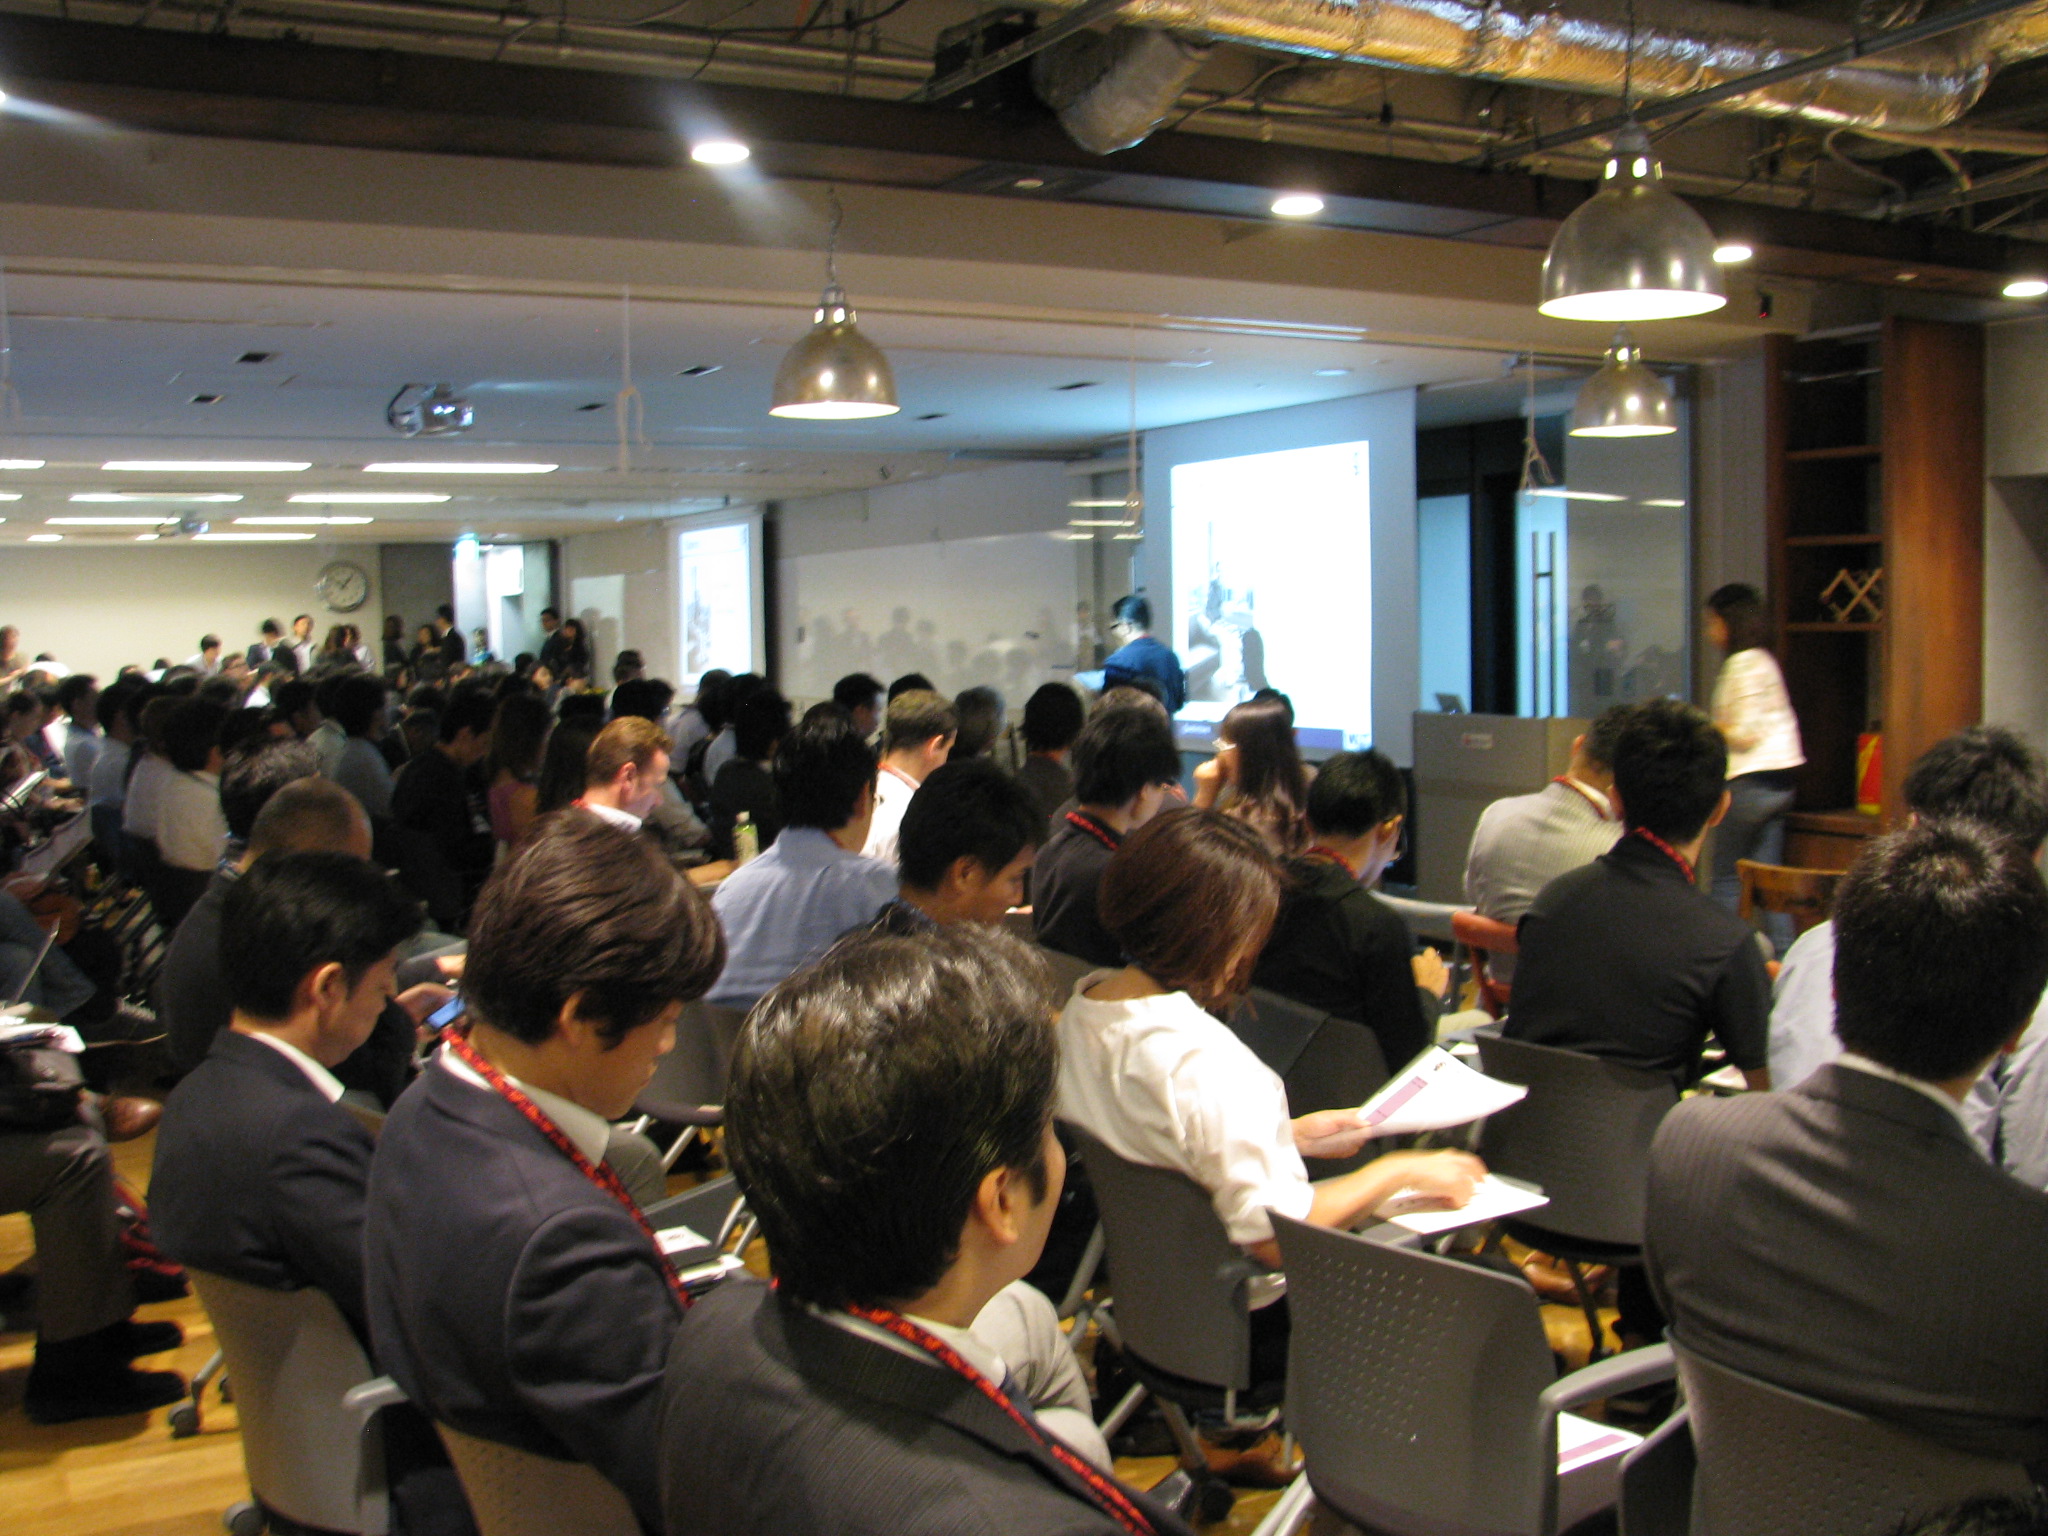 オンライン旅行の国際会議「WIT Japan 2016」が開幕、今年も参加者が大幅増、起業家プレゼンはタビナカに注目